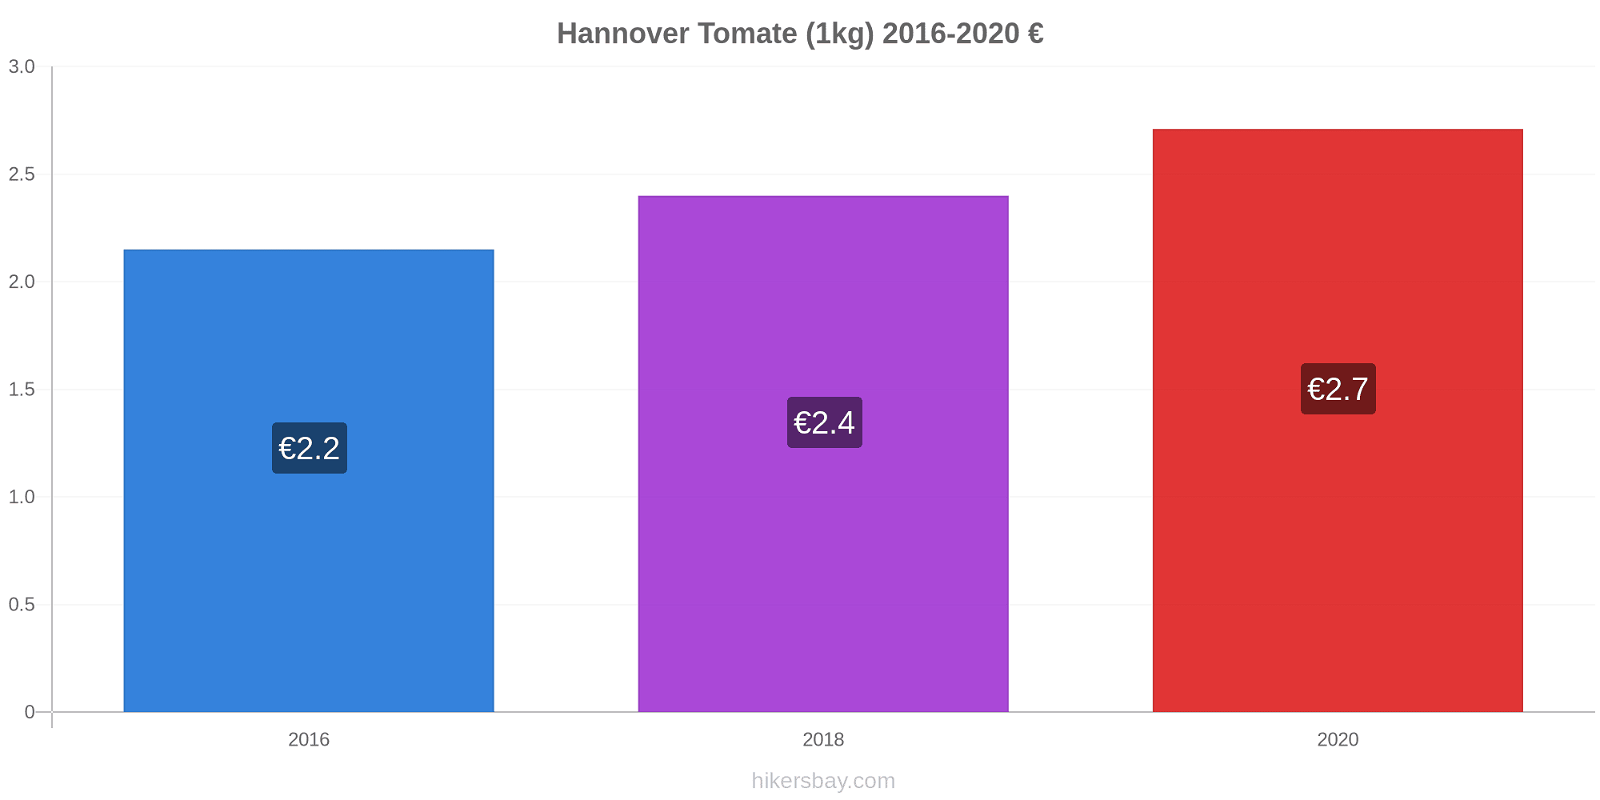 Hannover cambios de precios Tomate (1kg) hikersbay.com